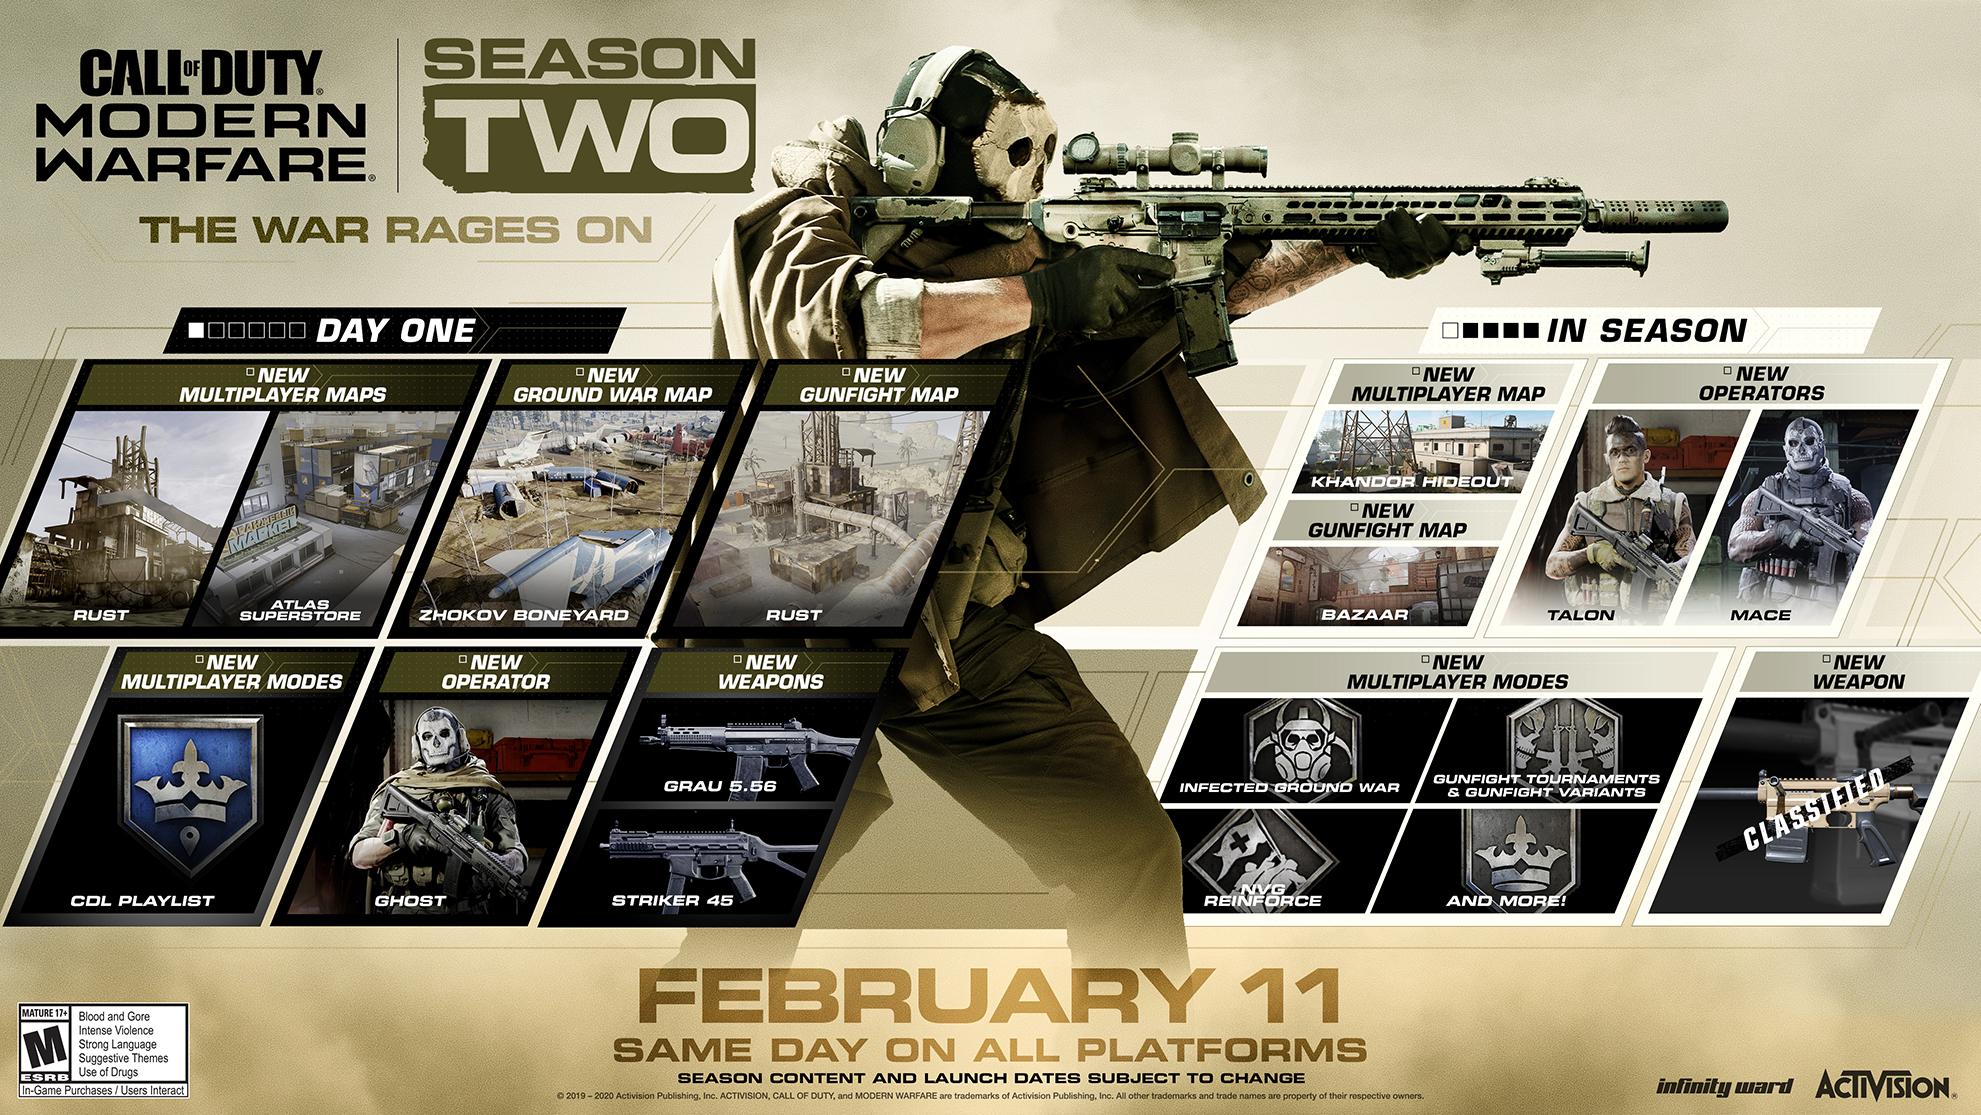 Infinity Ward's Season Two roadmap for Modern Warfare.